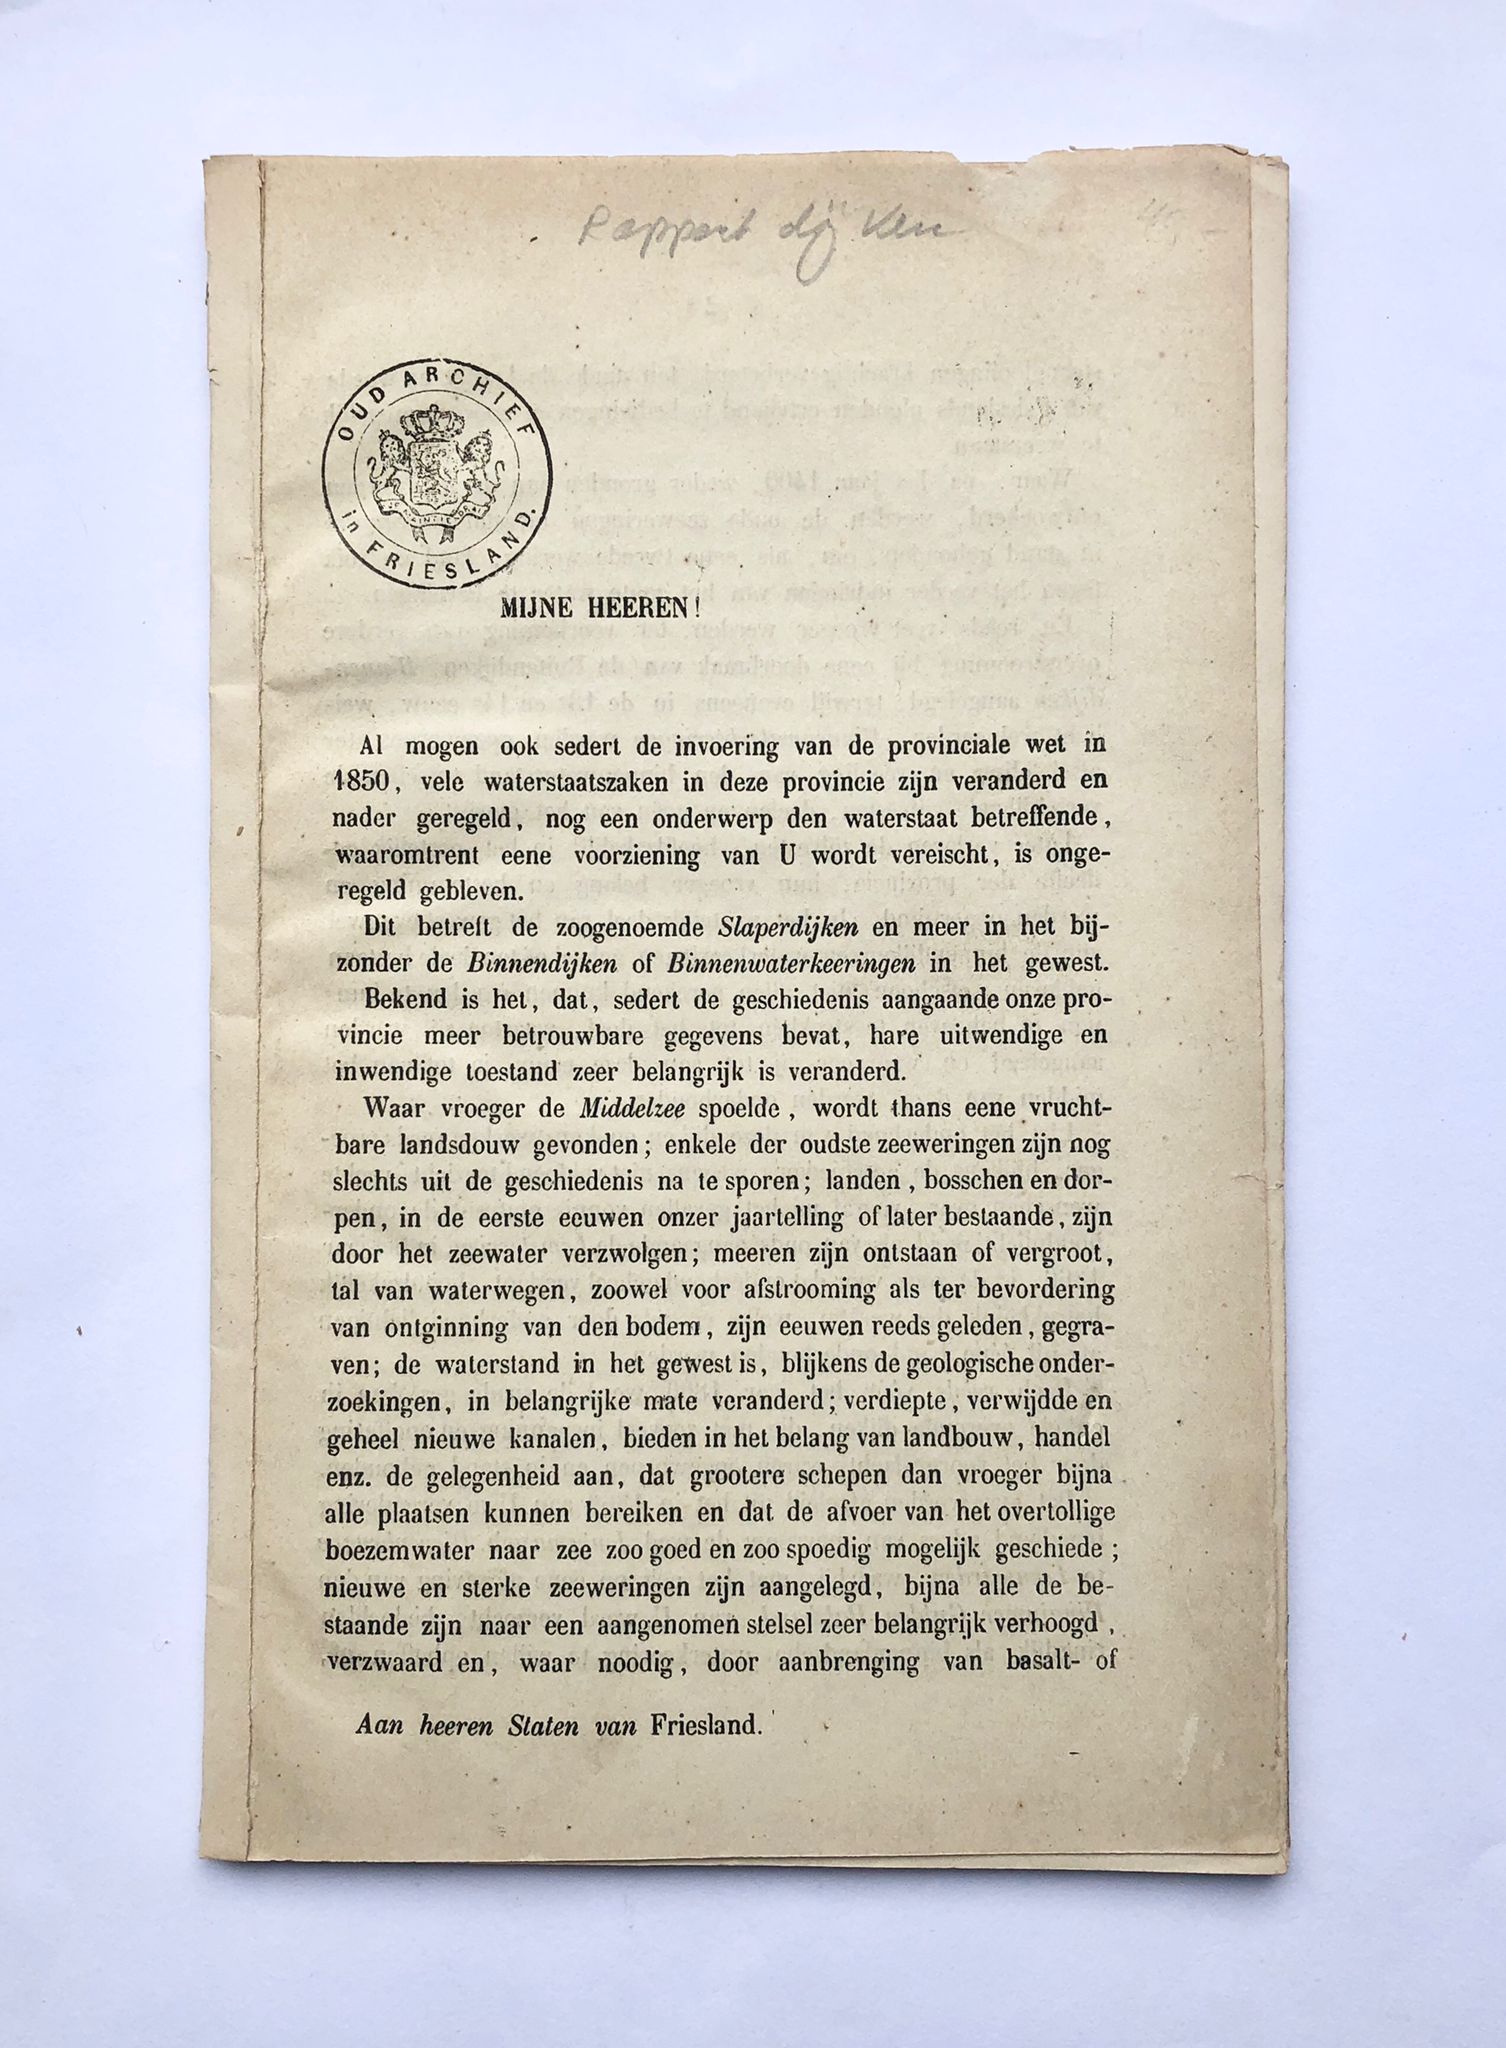 [Friesland, before 1900?] Rapport dijken, Aan heeren Staten van Friesland, 27 pp.